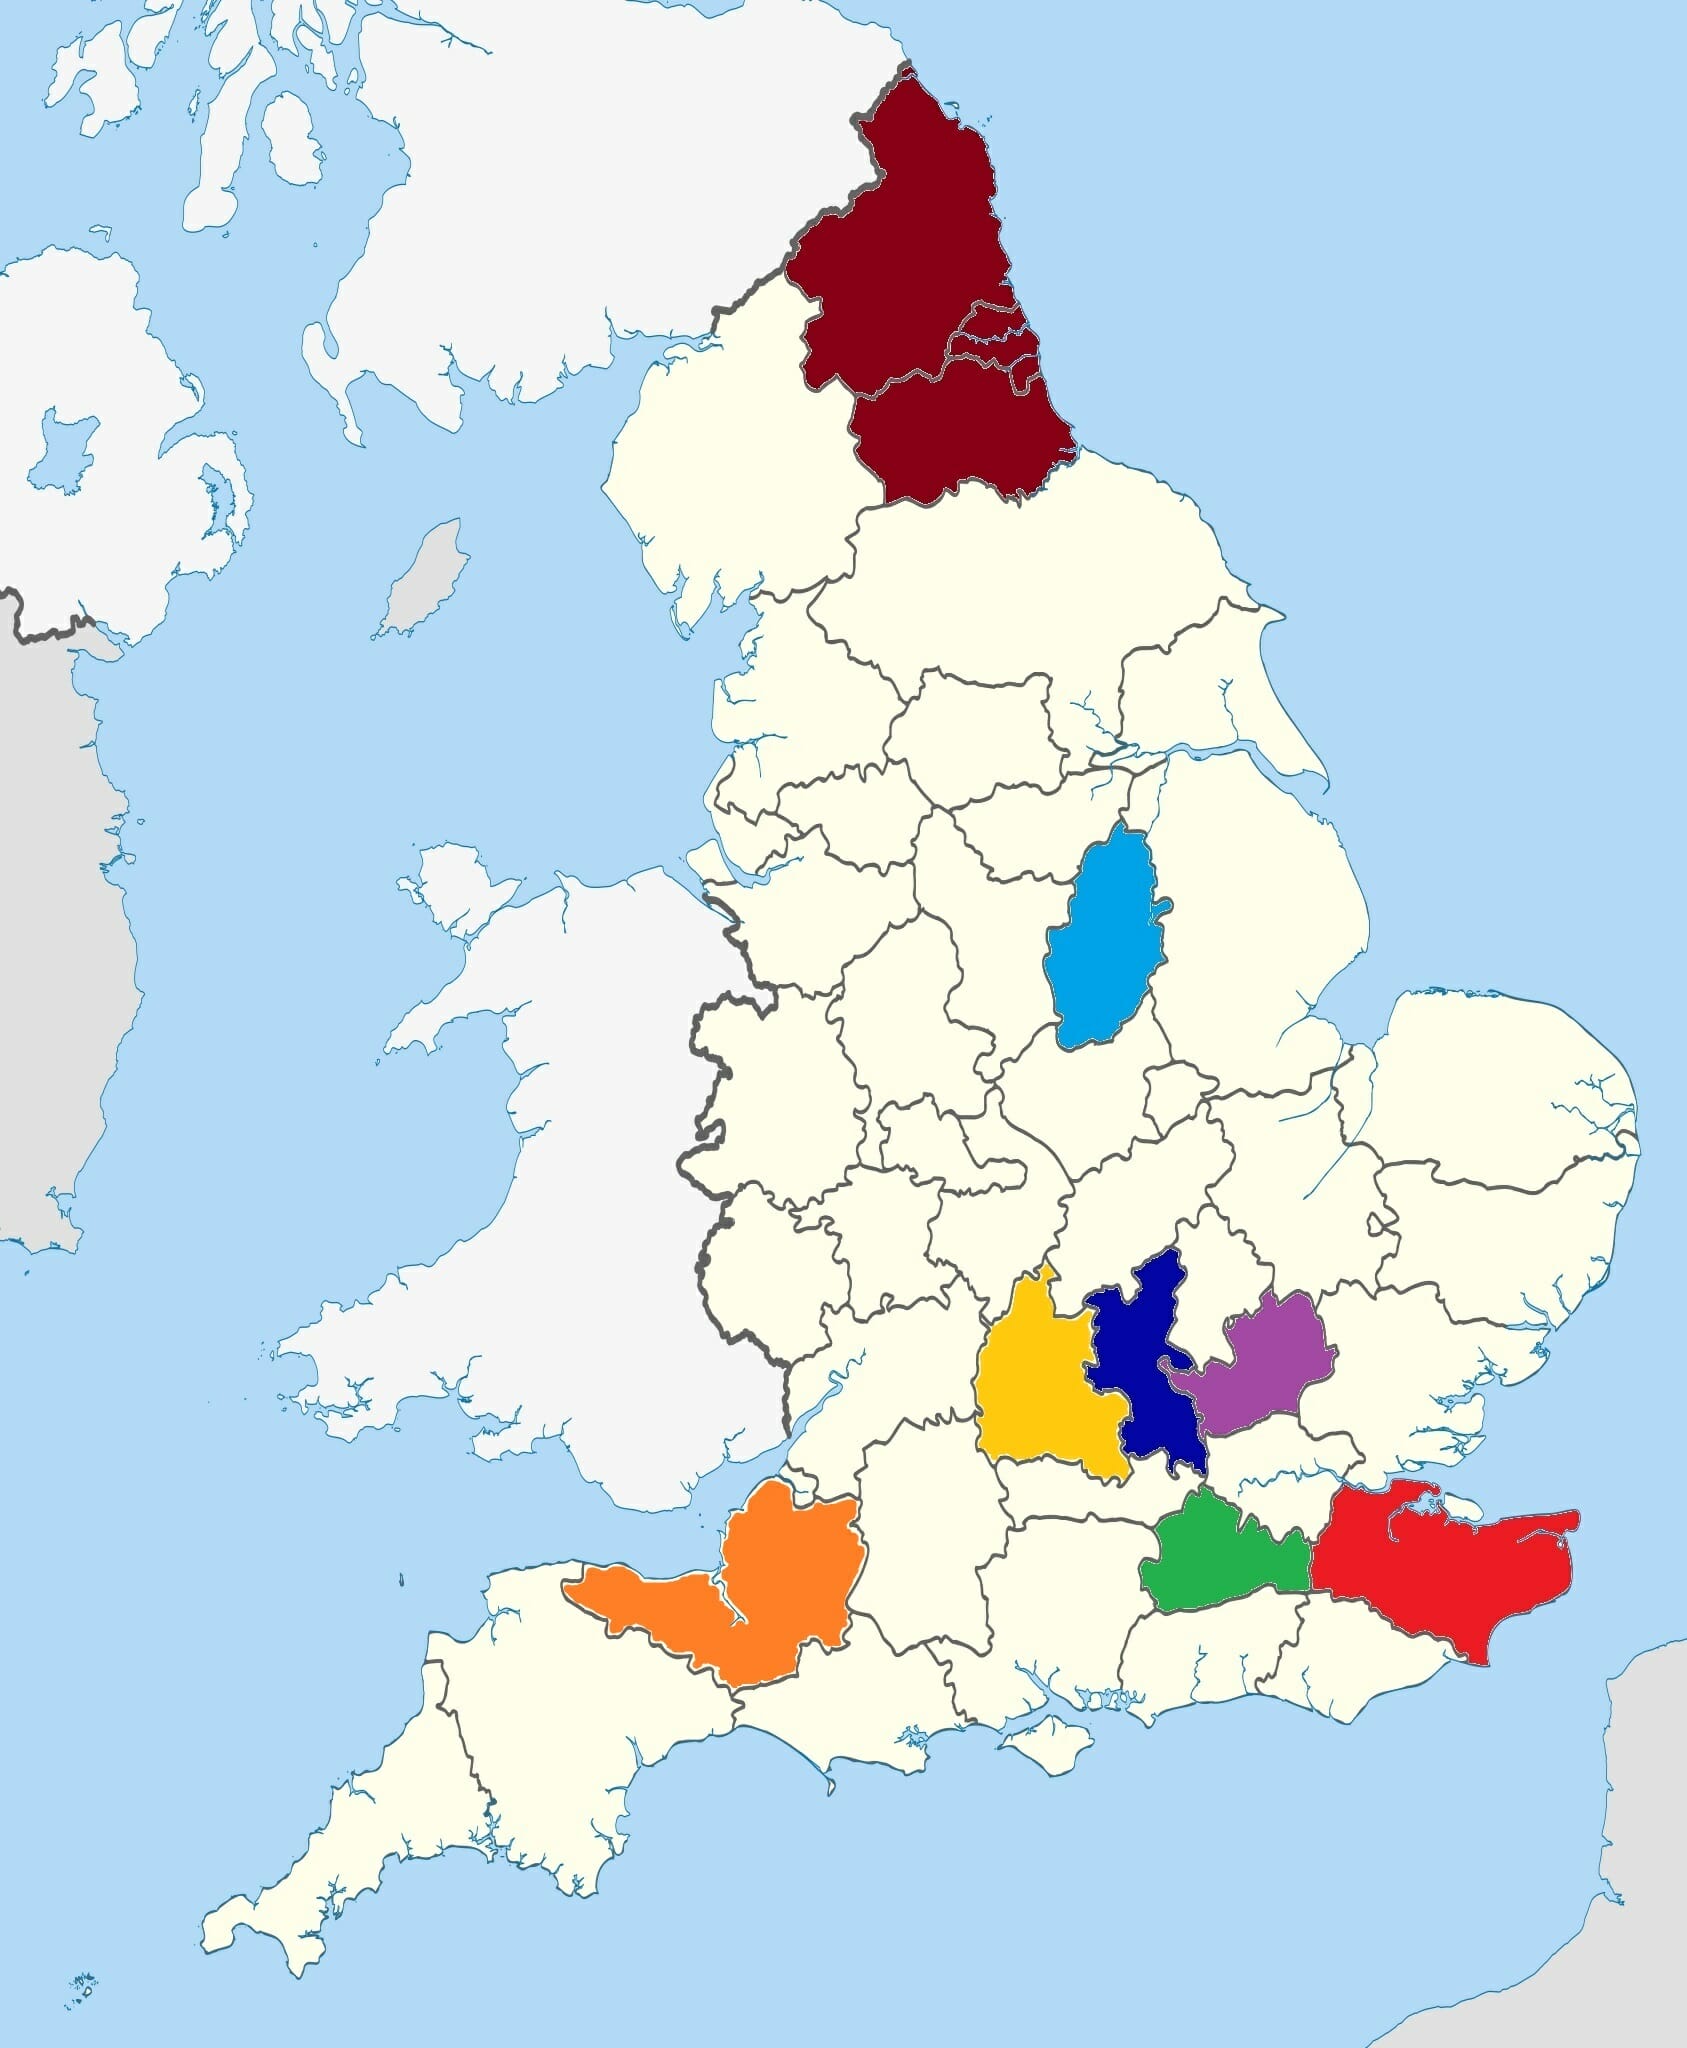 Regional representatives map December 22